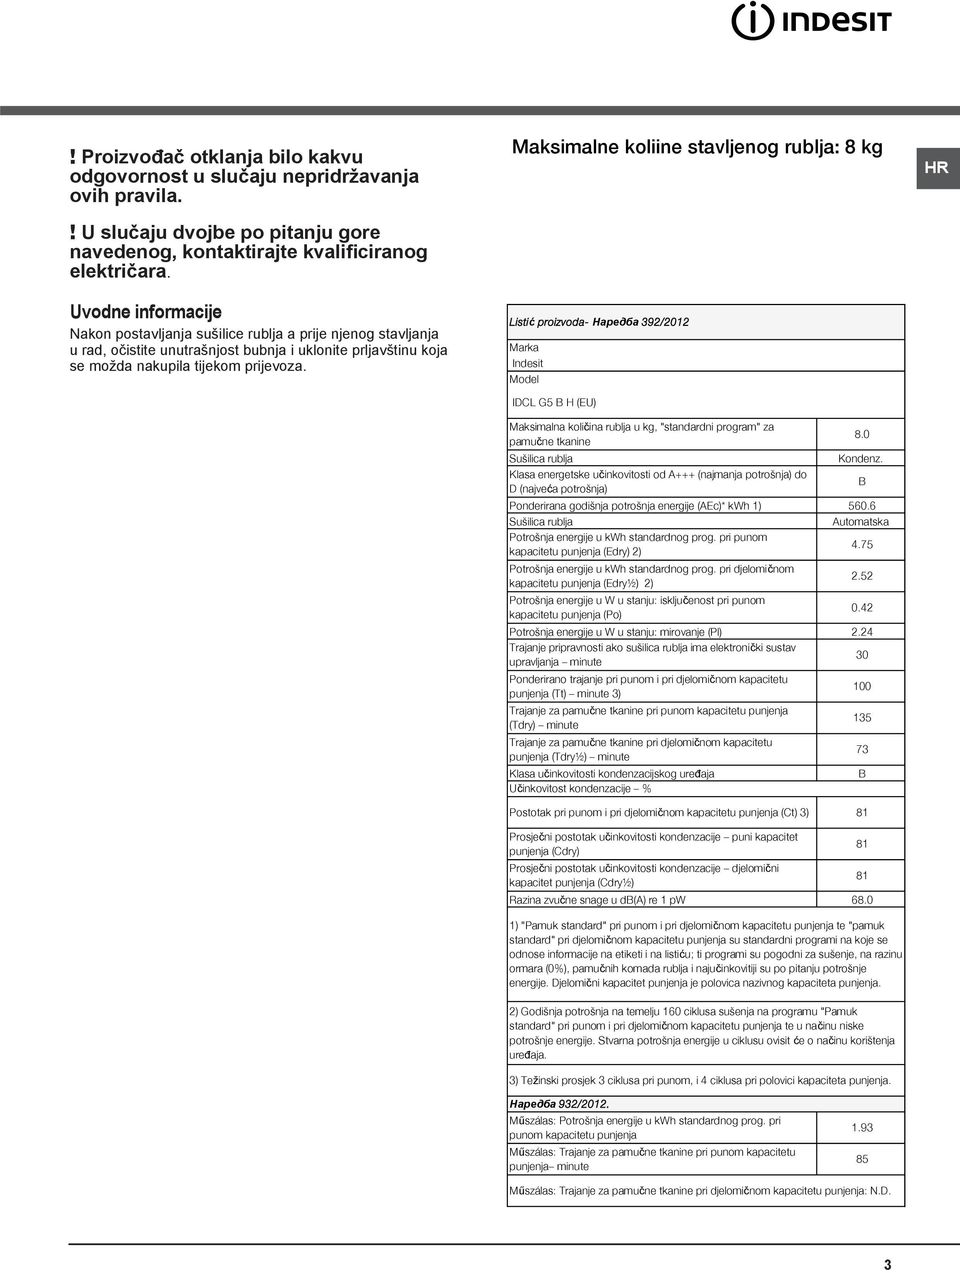 Maksimalne količine stavljenog rublja: 8 kg Listić proizvoda- Наредба 392/2012 Marka Indesit Model IDCL G5 B H (EU) Maksimalna količina rublja u kg, "standardni program" za pamučne tkanine Sušilica